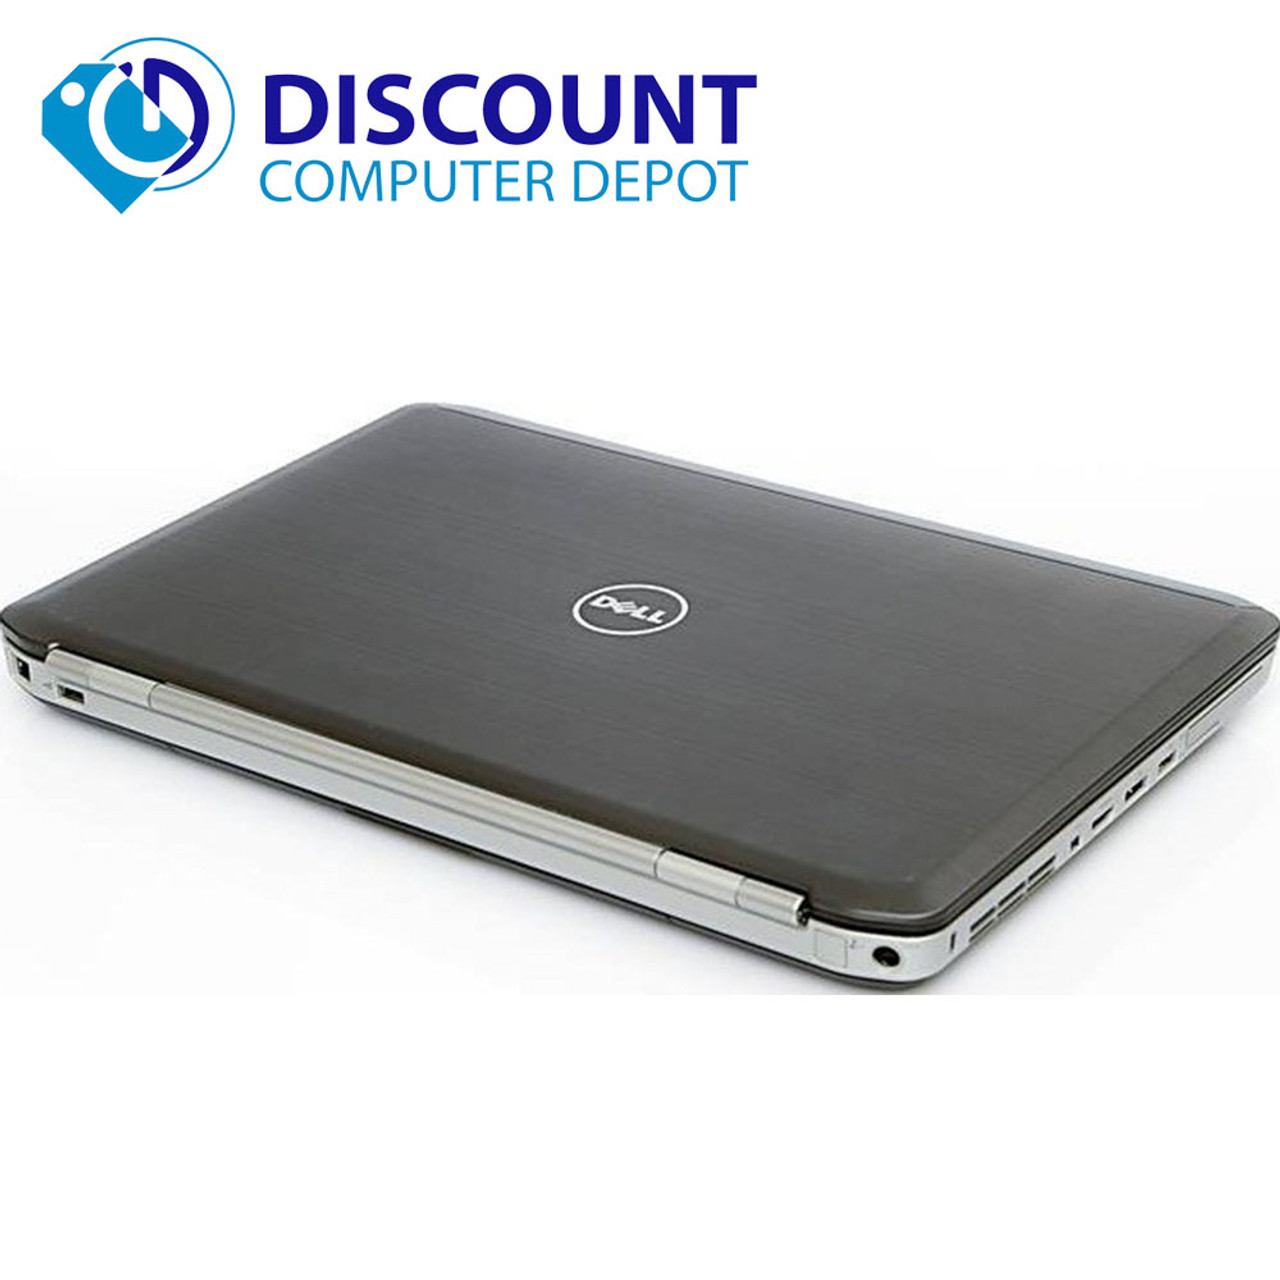 Dell Latitude E5530 Windows 10 Pro Laptop PC Intel i5 2.6GHz 8GB 